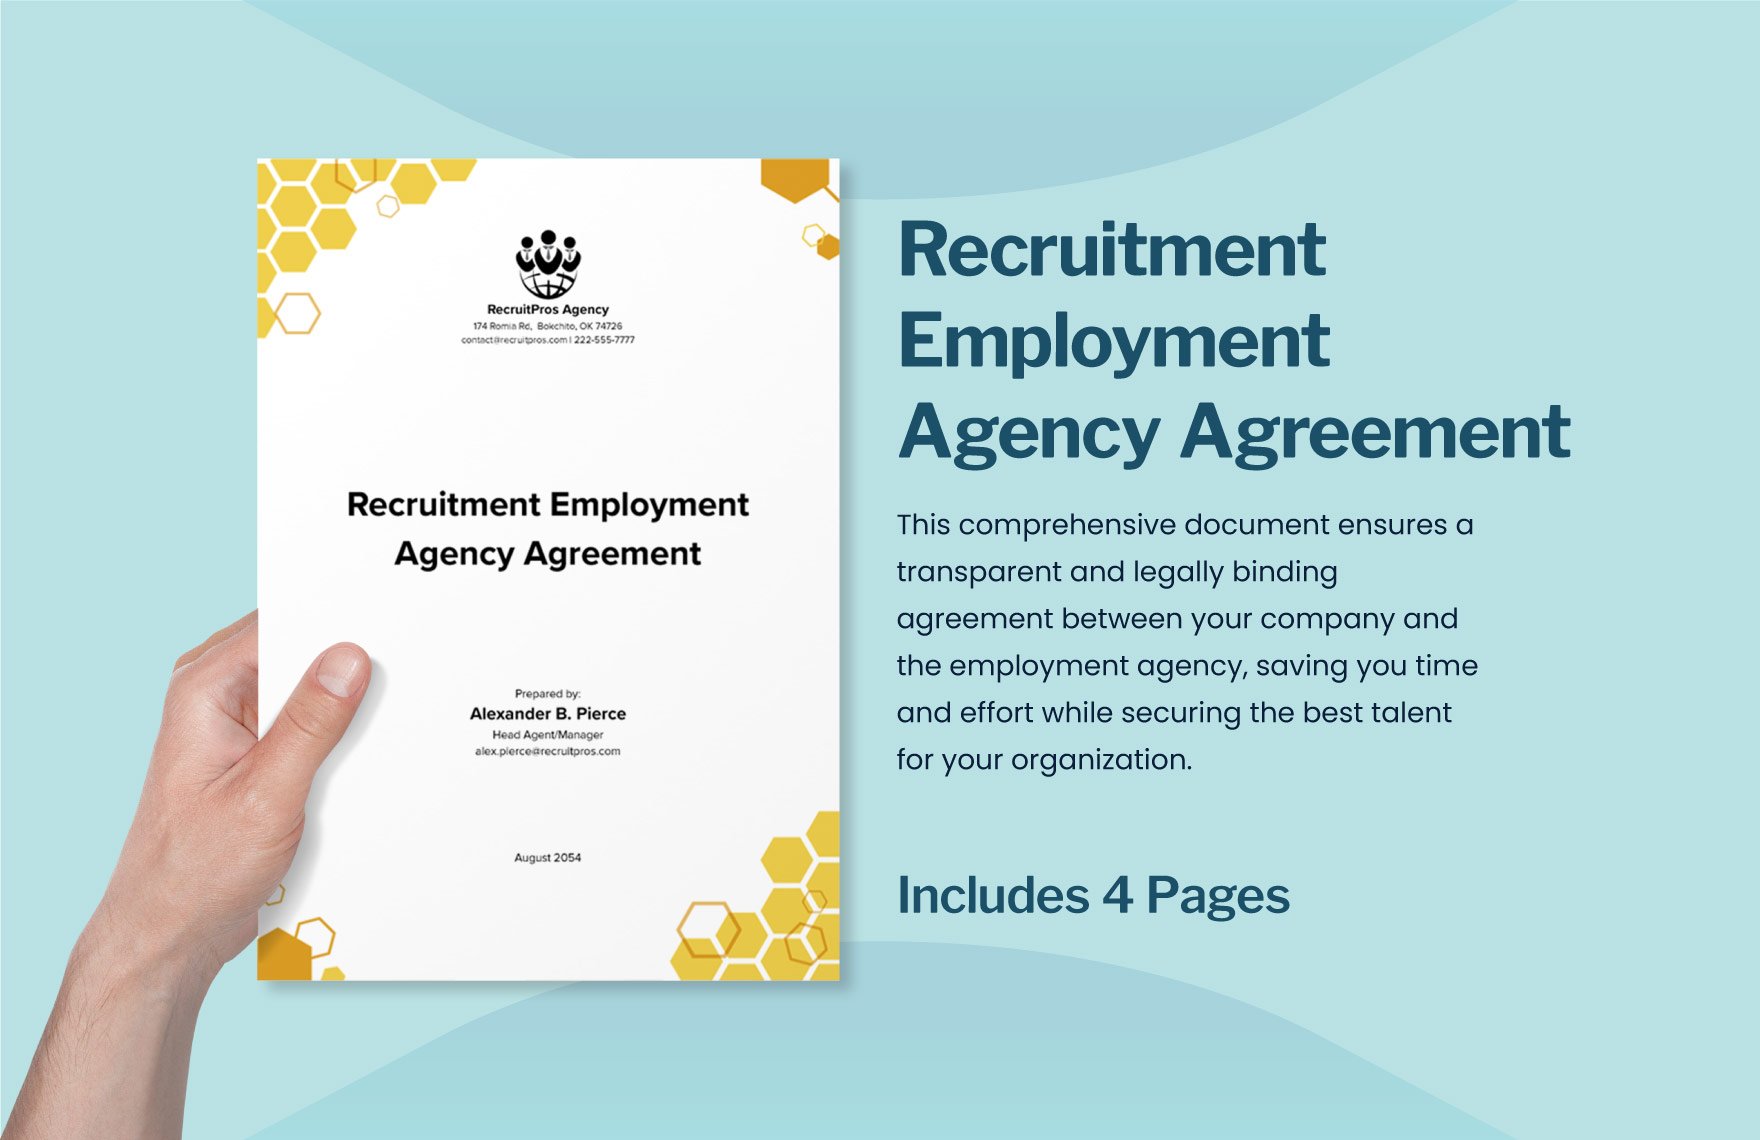 Recruitment Employment Agency Agreement